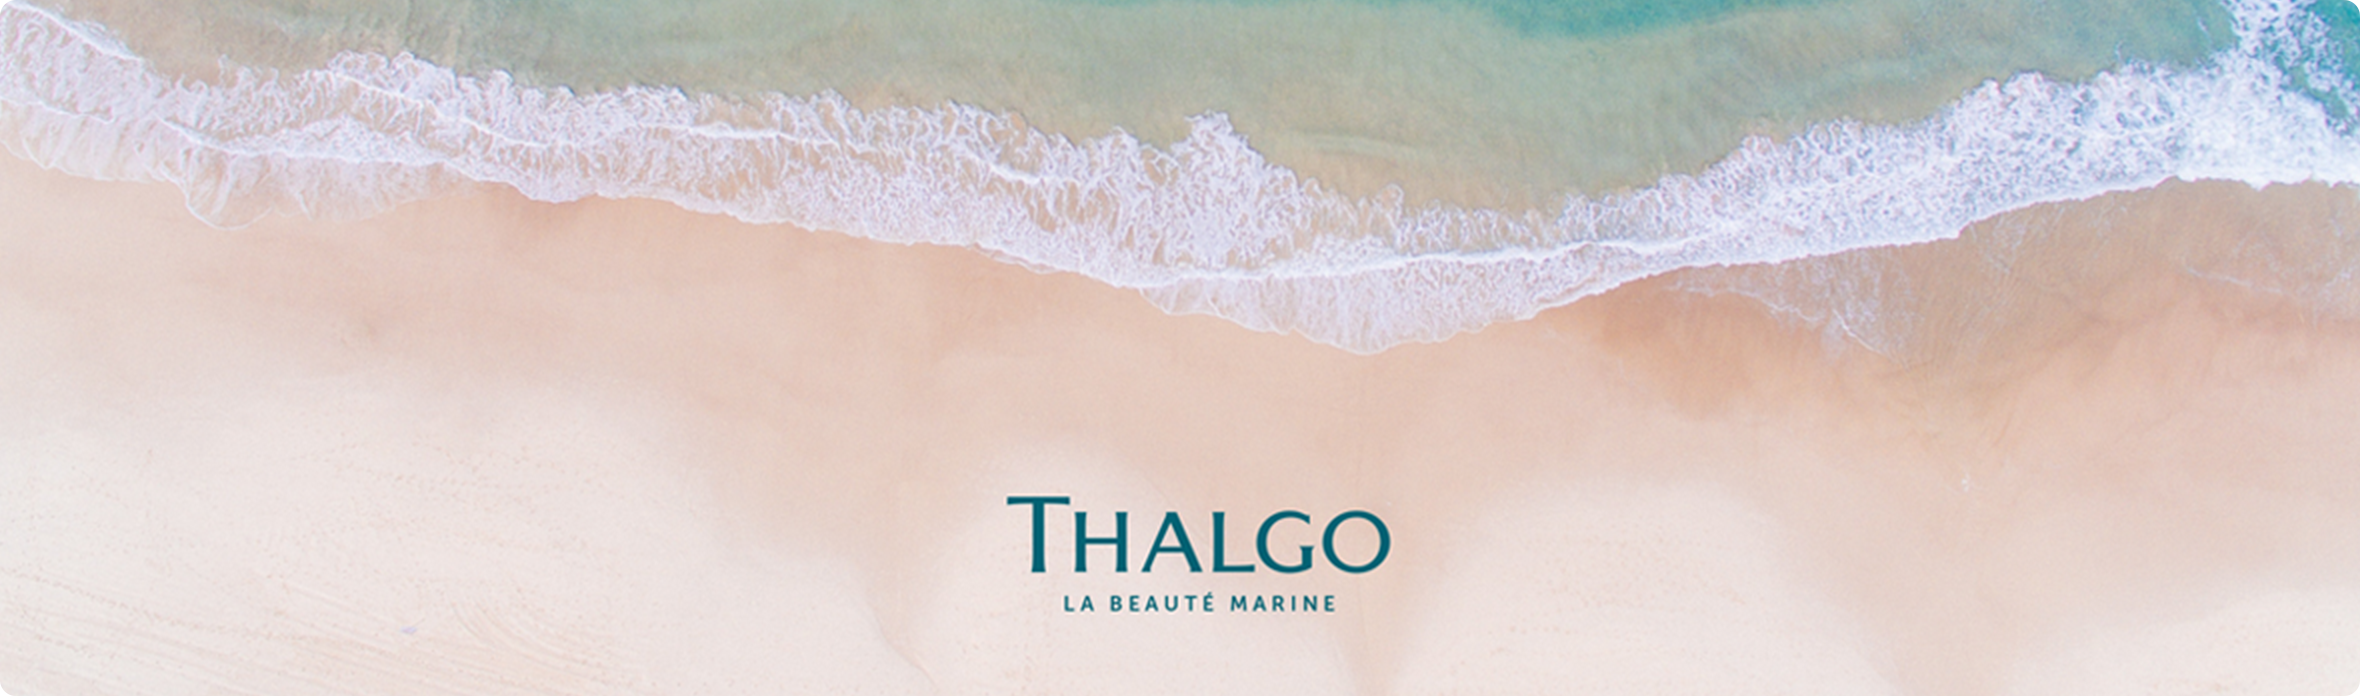 Visuel marque Thalgo